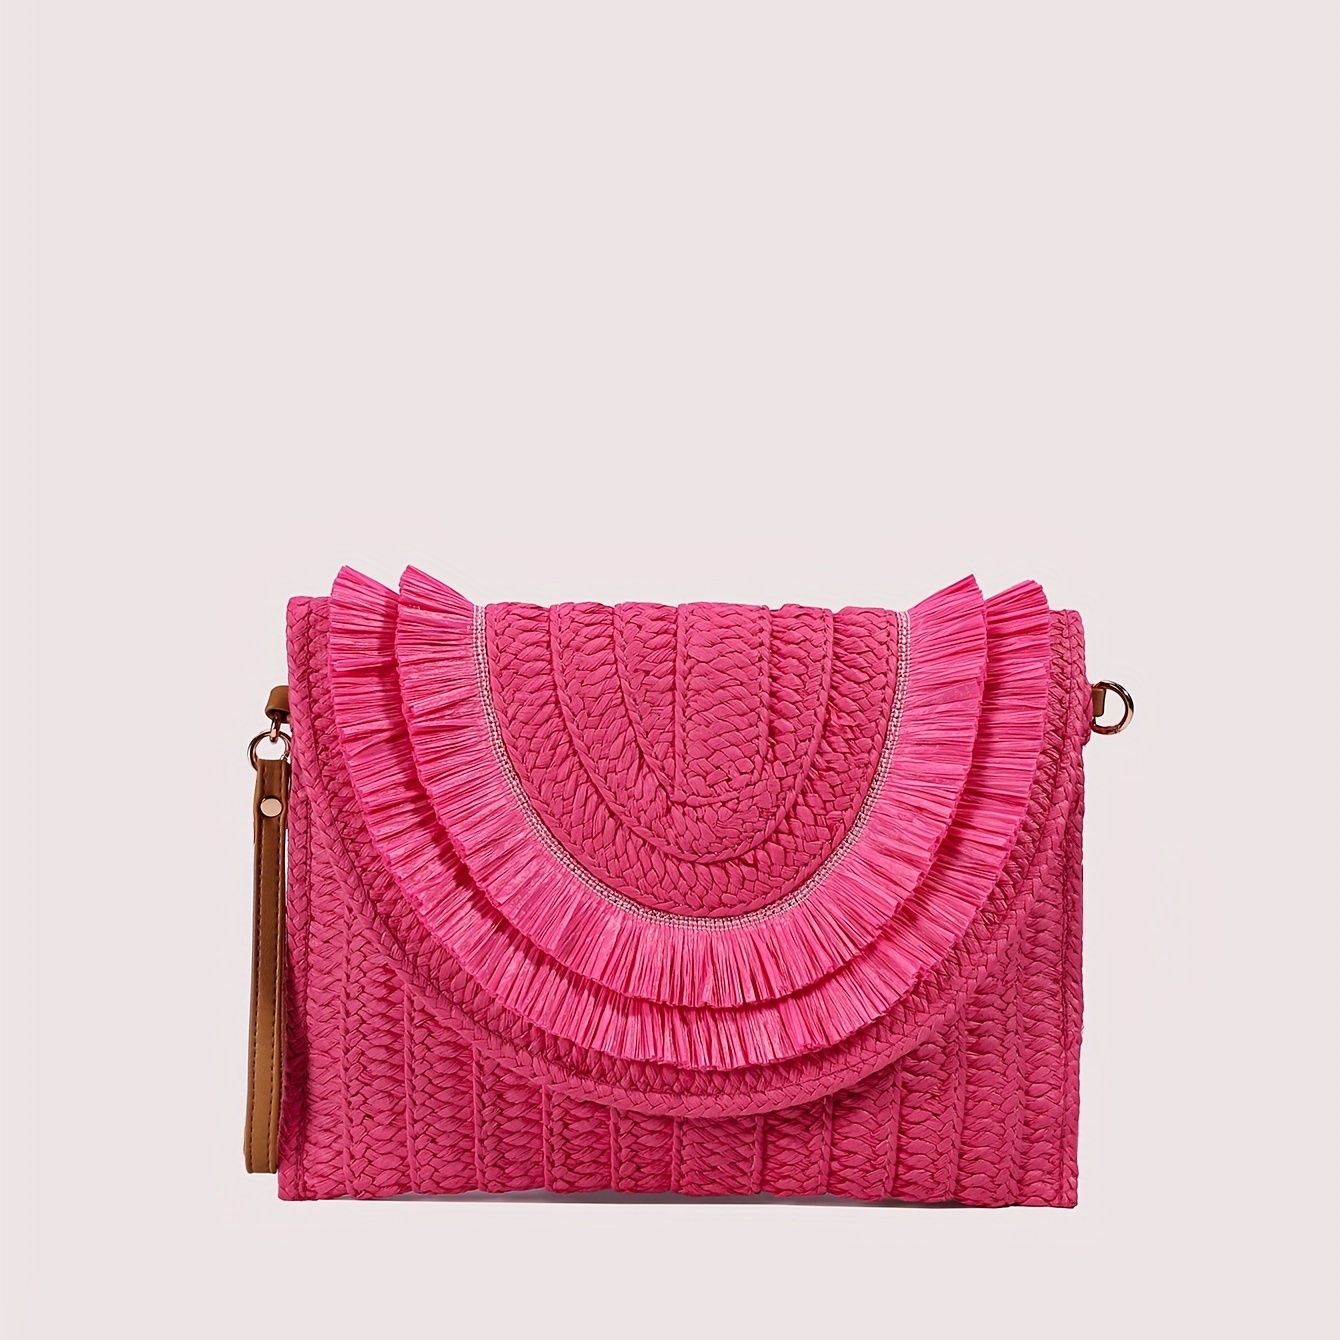 

Fringe Woven Straw Clutch Bag, Flap Magnet Versatile Handbag, Solid Color Weaving Trendy Purse Wristlet Bag